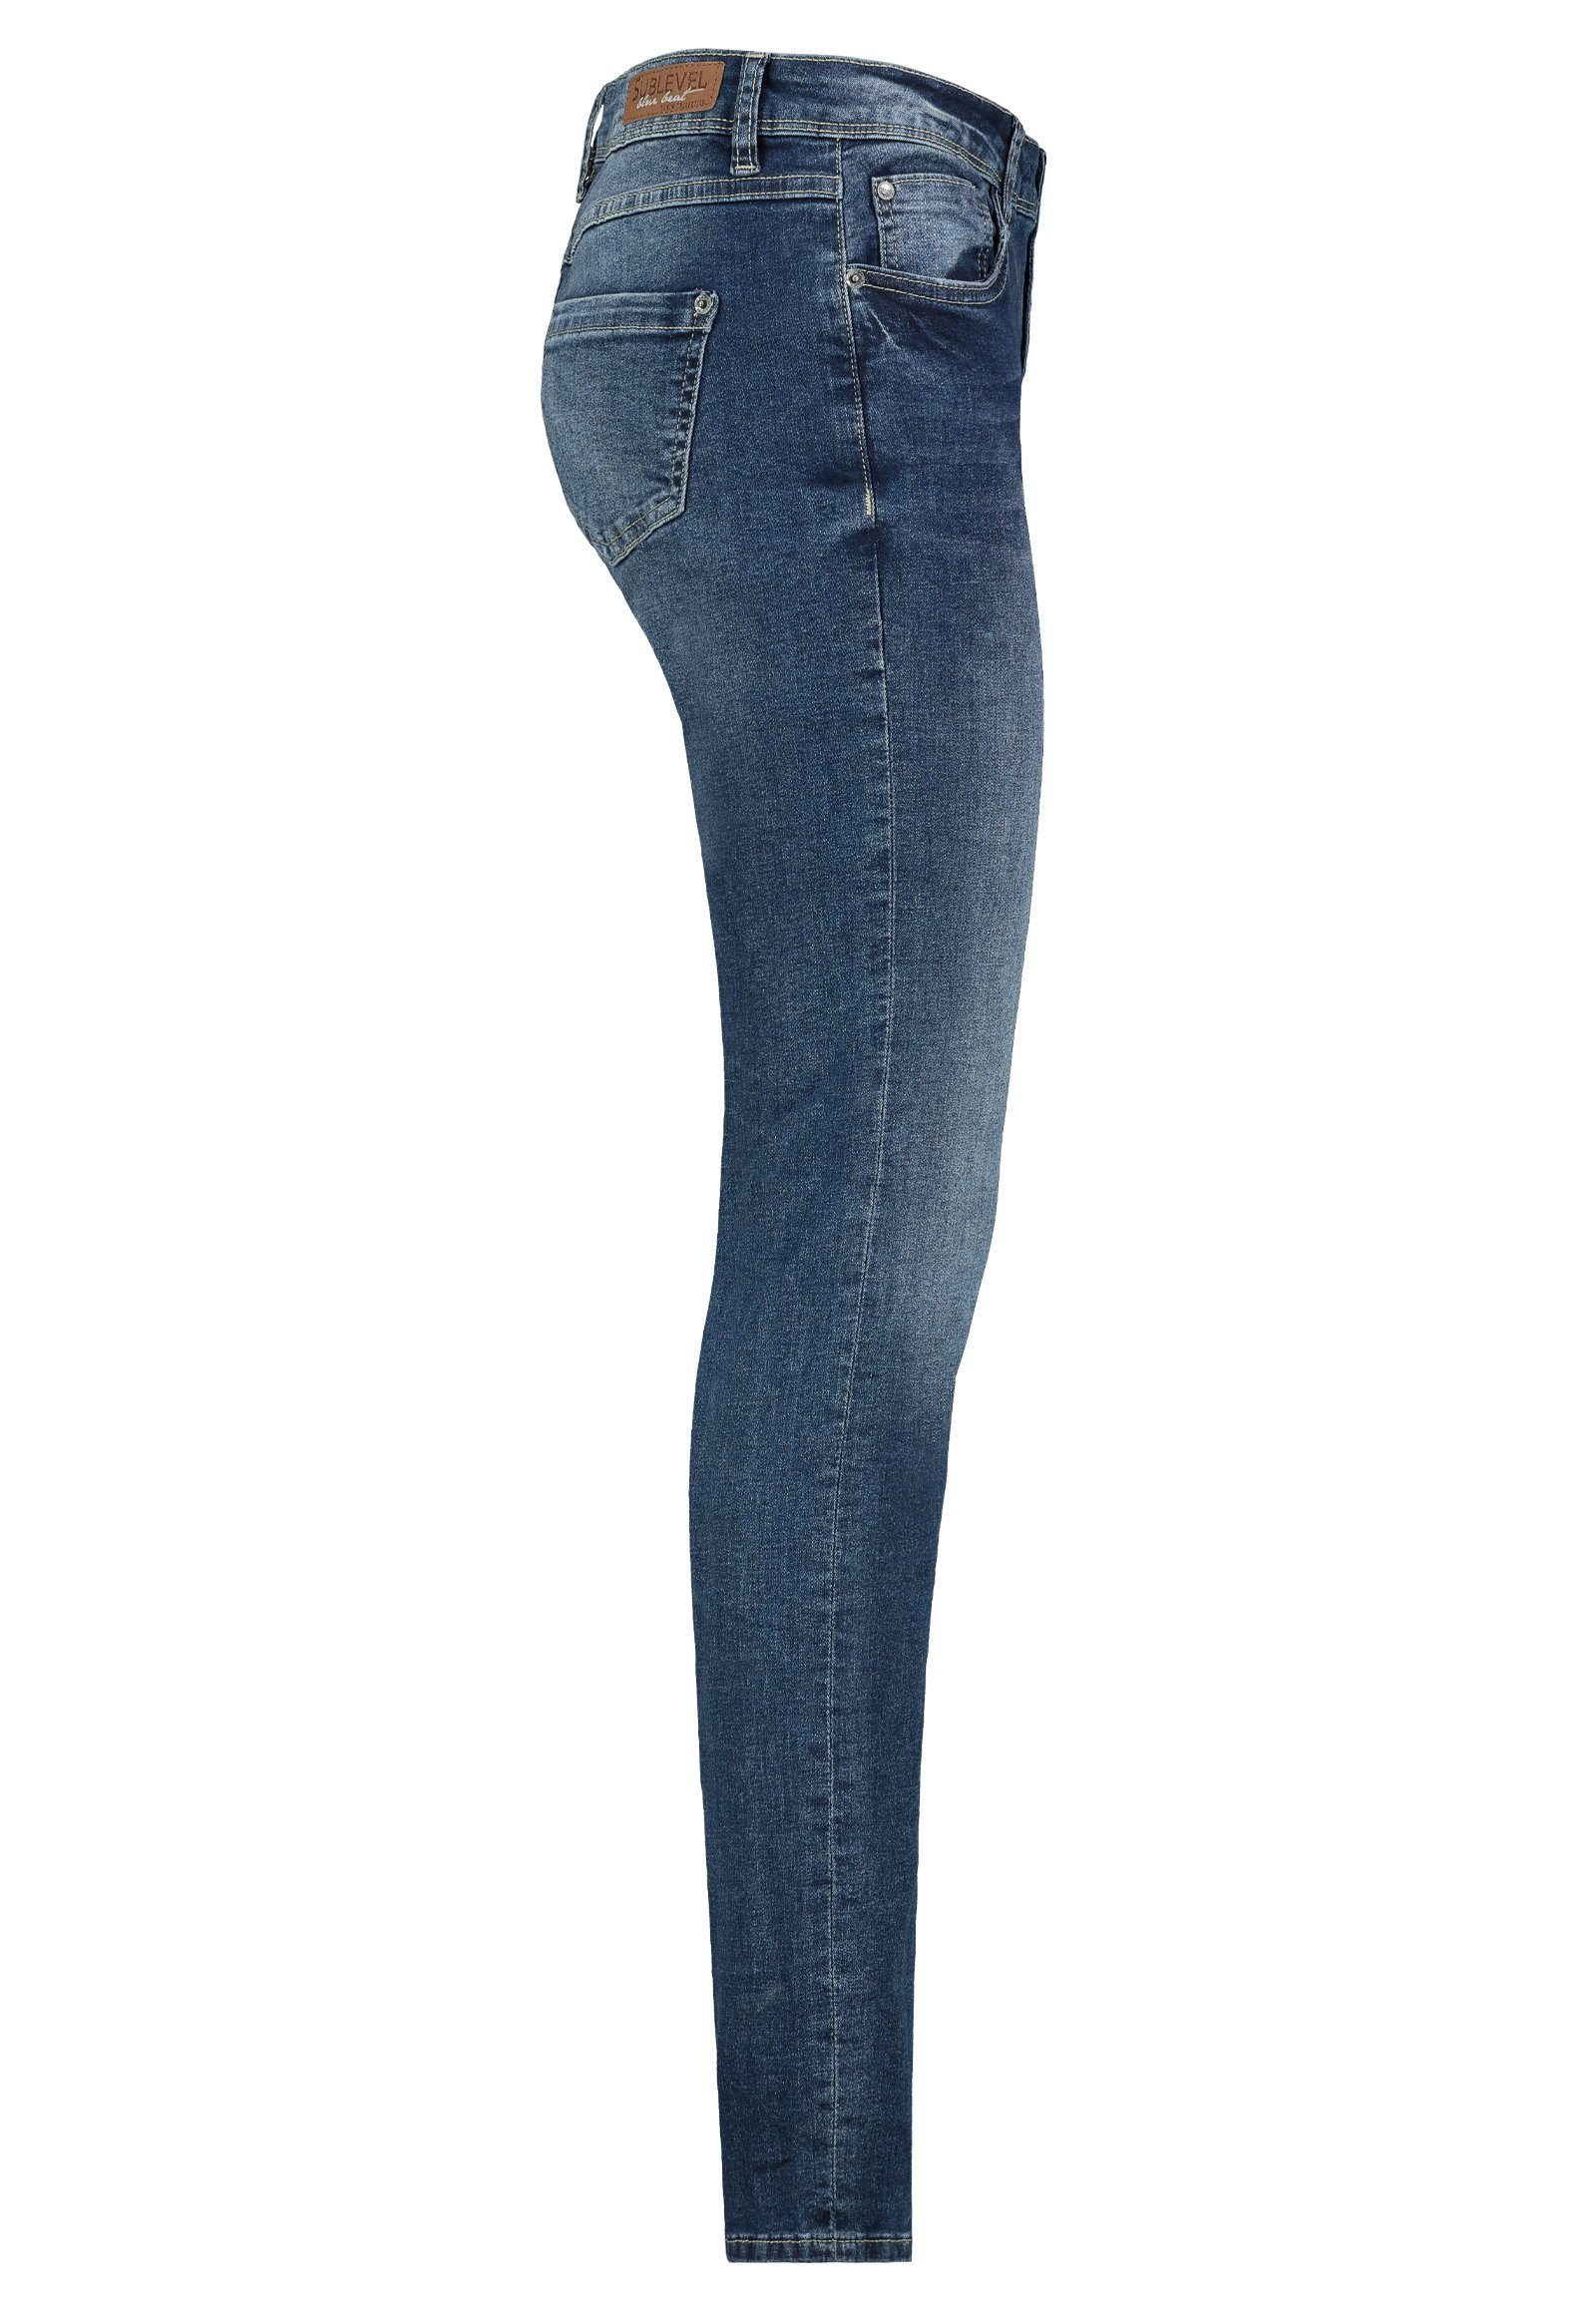 Jeanshose Middle Hose Slim Jeans Denim SUBLEVEL Fit Blue Stretch Hose Damen Röhre Slim-fit-Jeans Sublevel